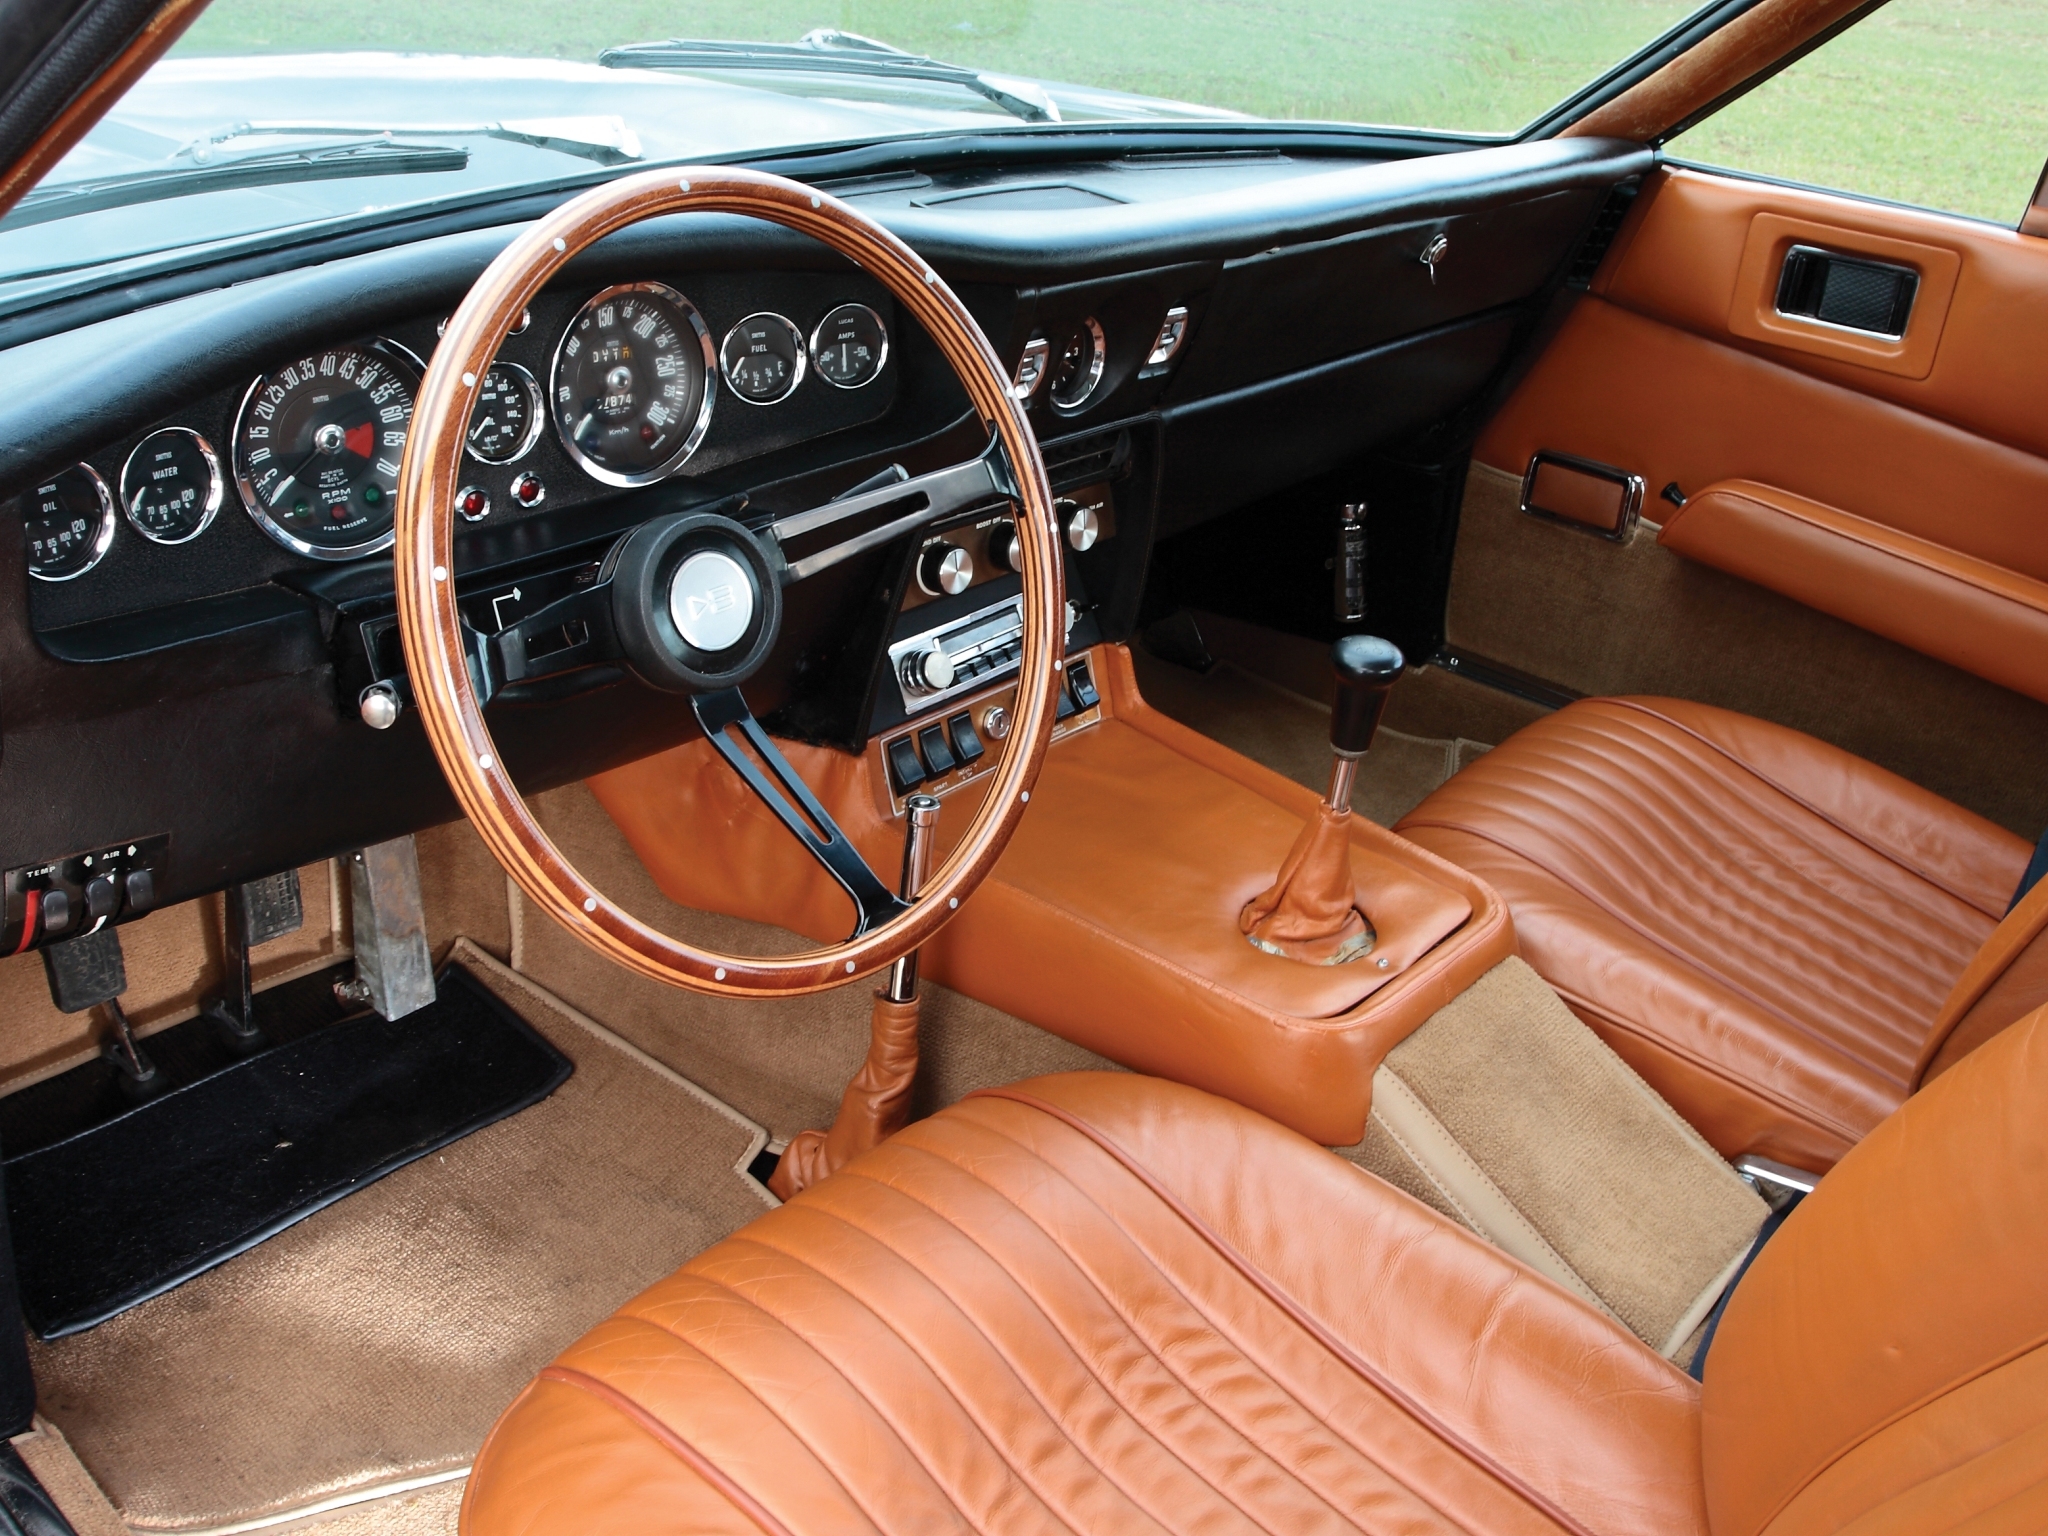 1969, steering wheel, rudder, interior, aston martin, cars, dbs, salon, speedometer, v8